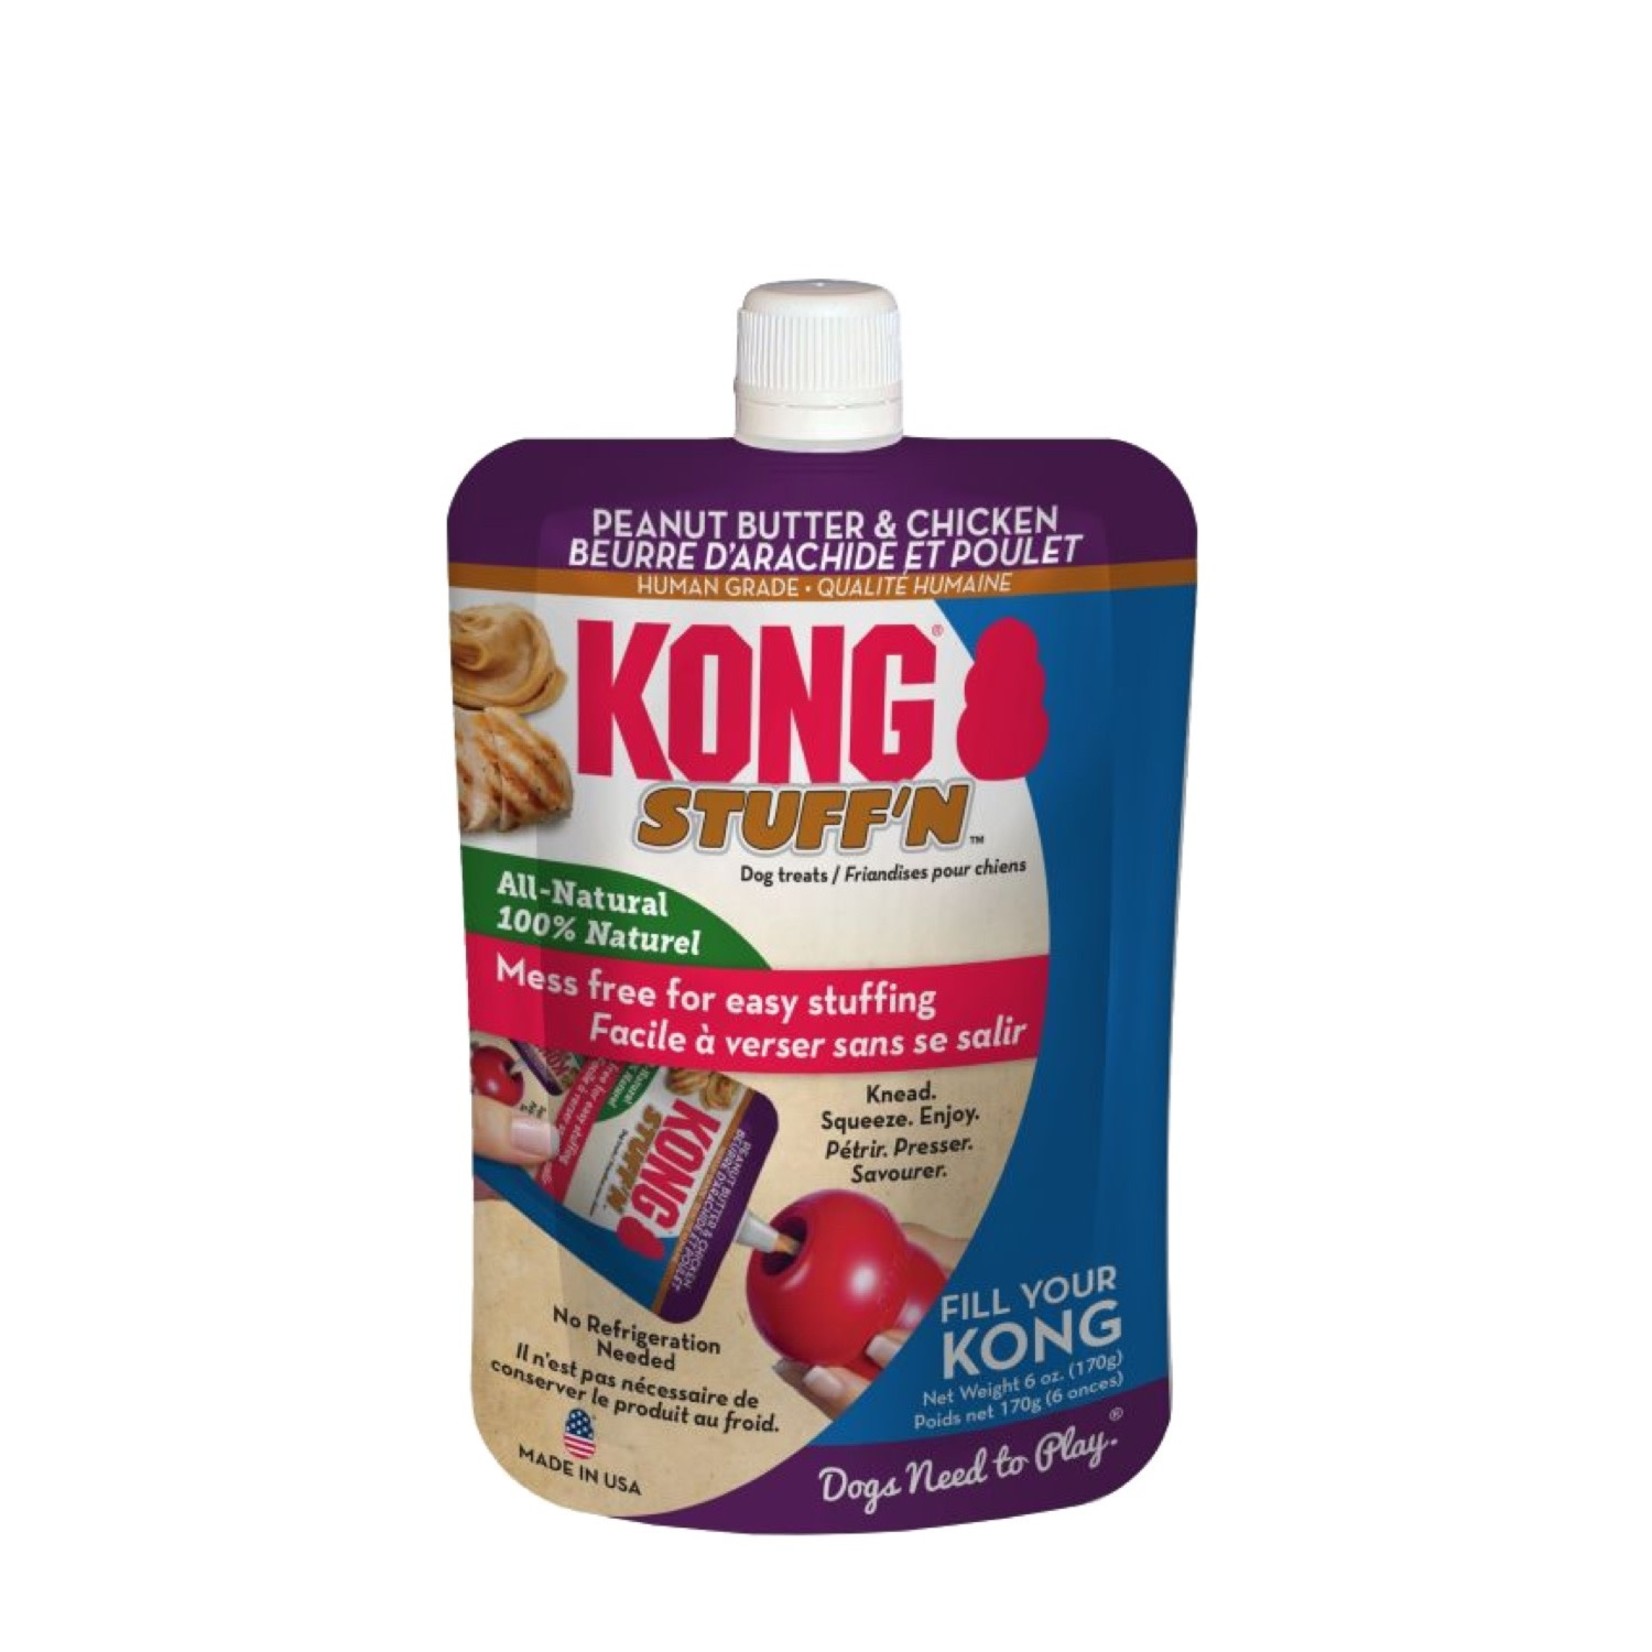 Kong Kong Stuff'N Dog Treats Peanut Butter & Chicken 6oz